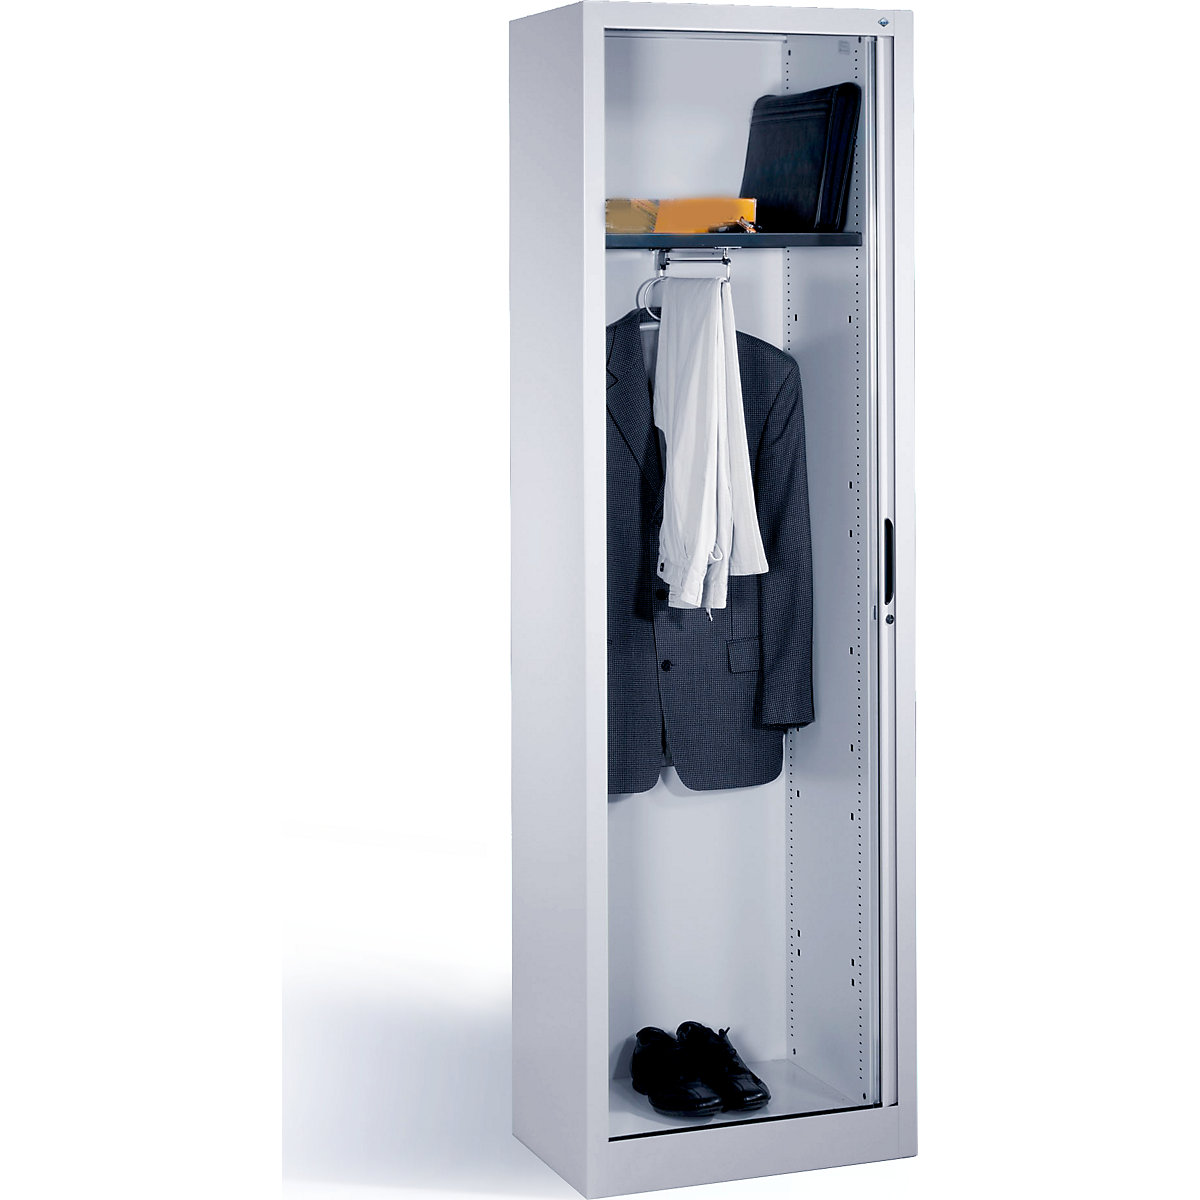 Szafa na garderobę z roletami poziomymi – C+P, wys. x szer. x gł. 1980 x 600 x 420 mm, 1 półka, 1 drążek na ubrania, białe aluminium-5